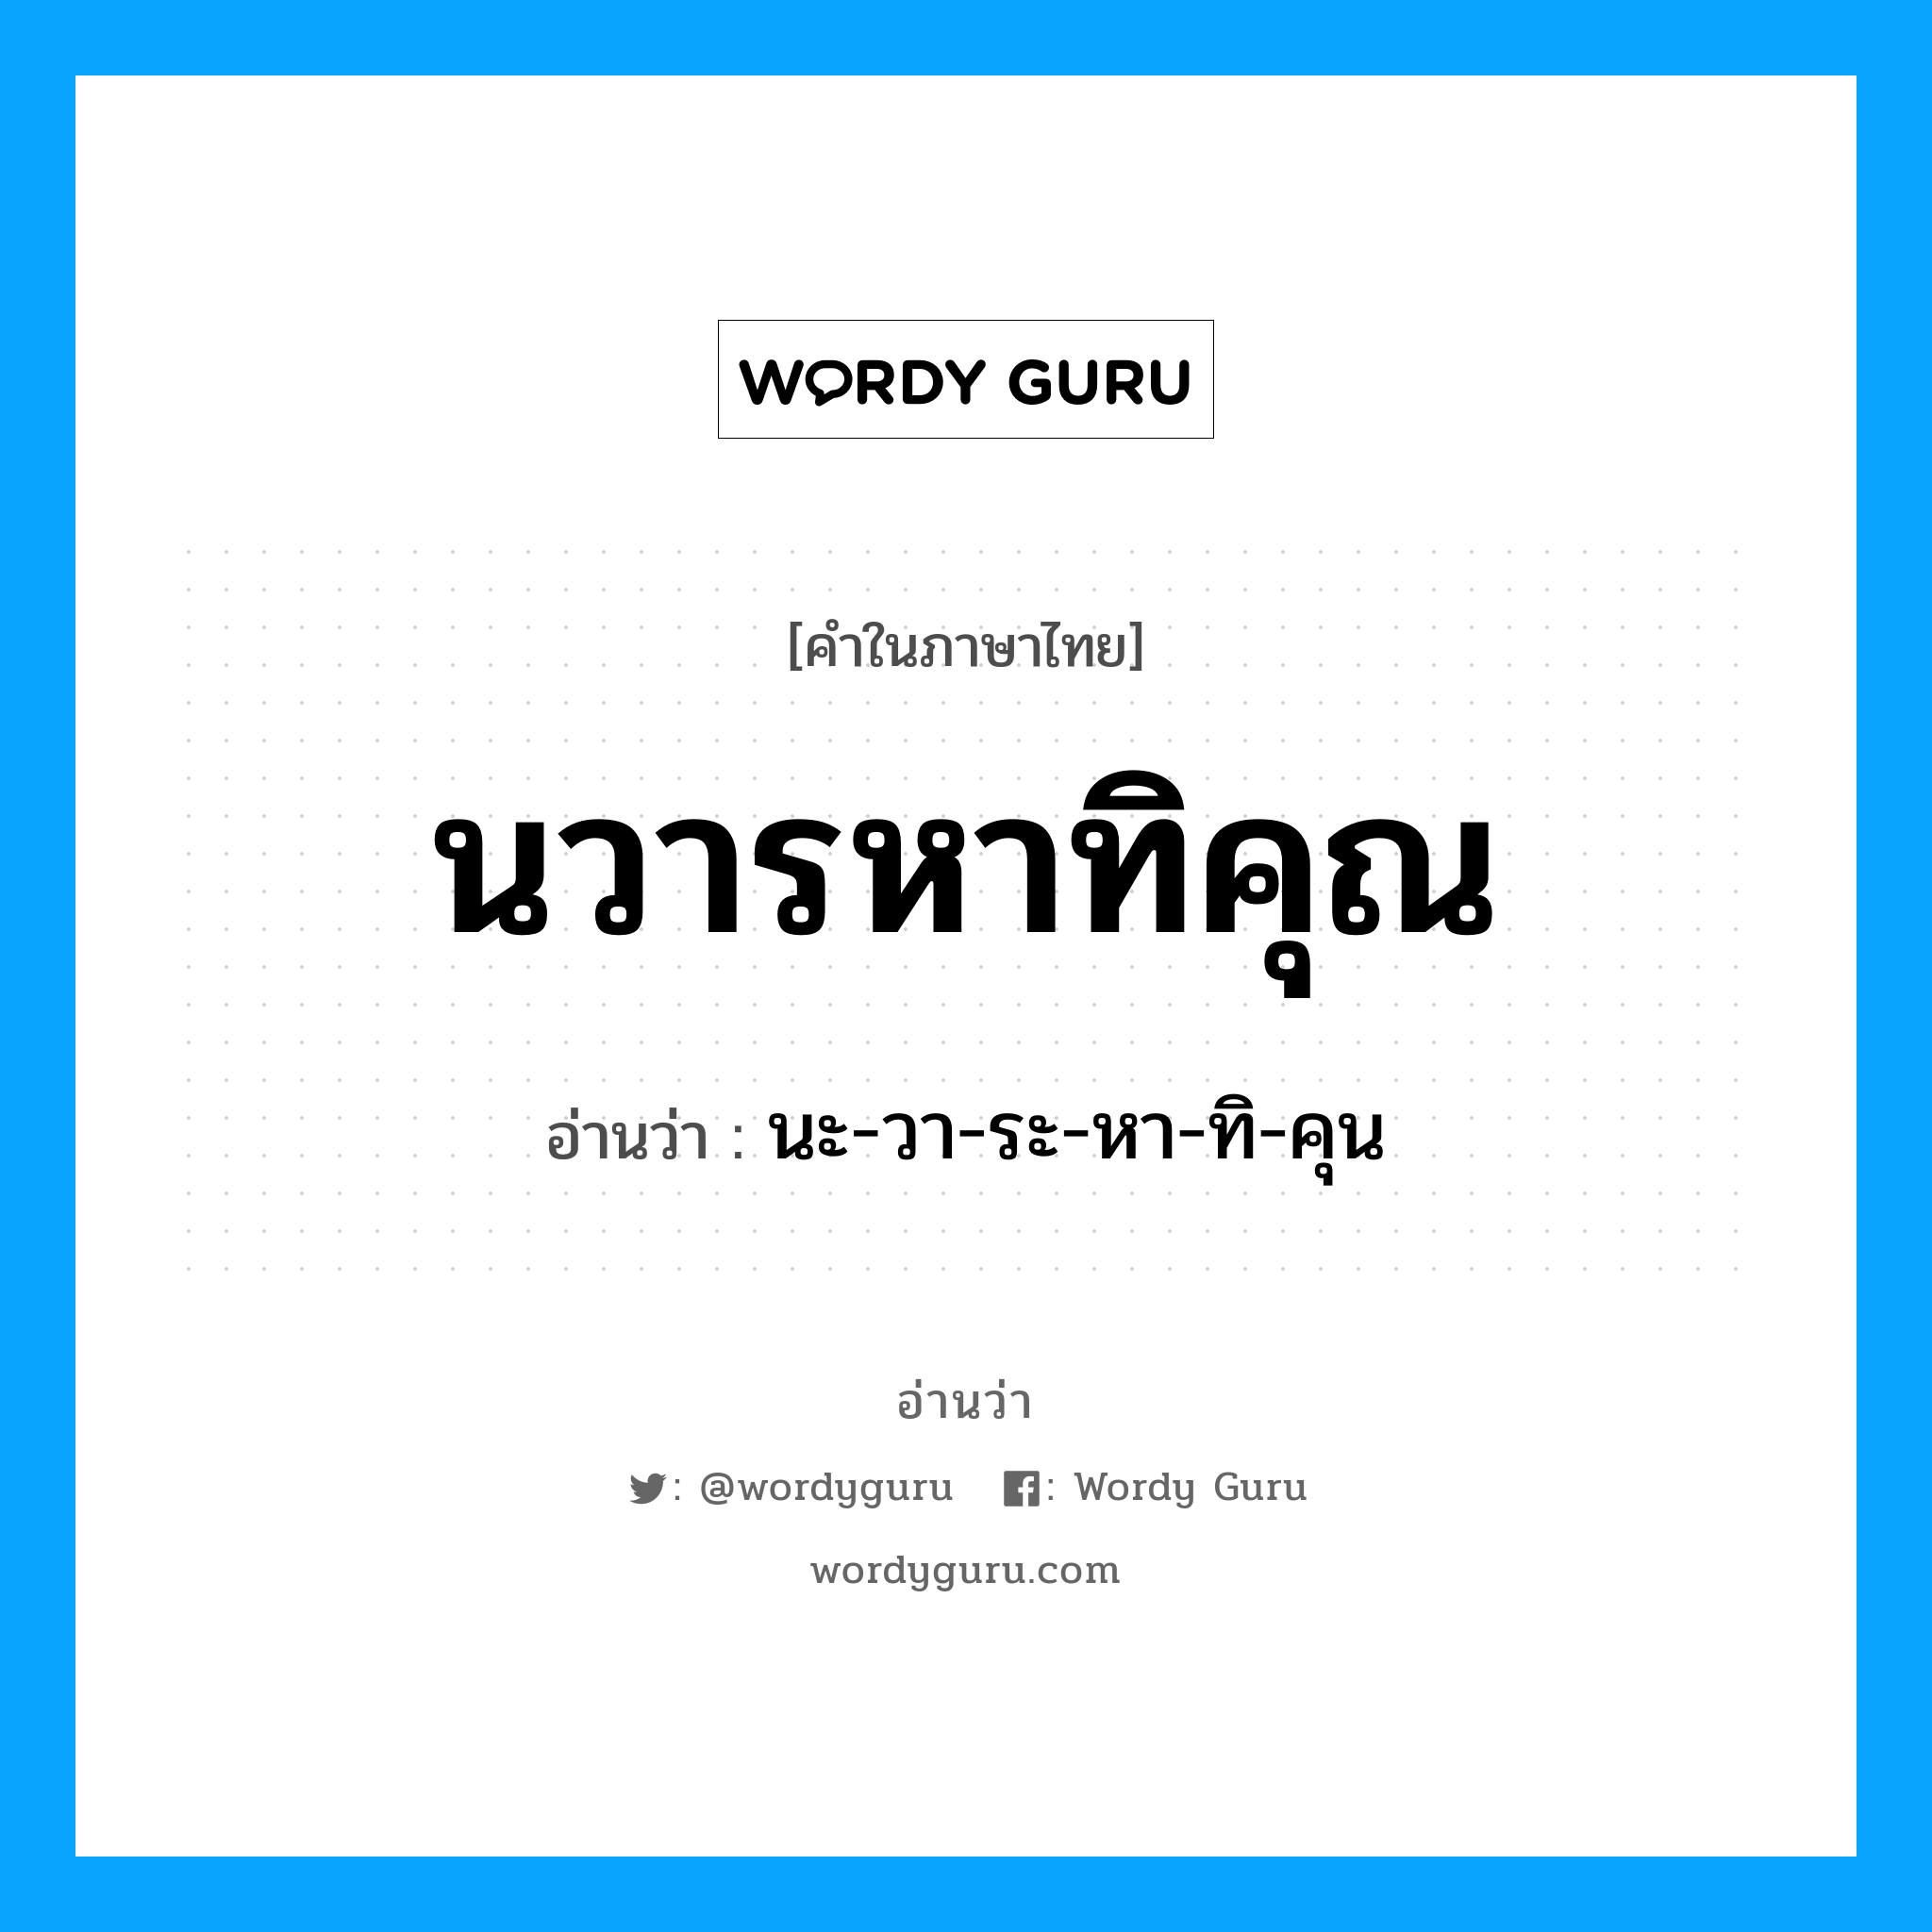 นะ-วา-ระ-หา-ทิ-คุน เป็นคำอ่านของคำไหน?, คำในภาษาไทย นะ-วา-ระ-หา-ทิ-คุน อ่านว่า นวารหาทิคุณ